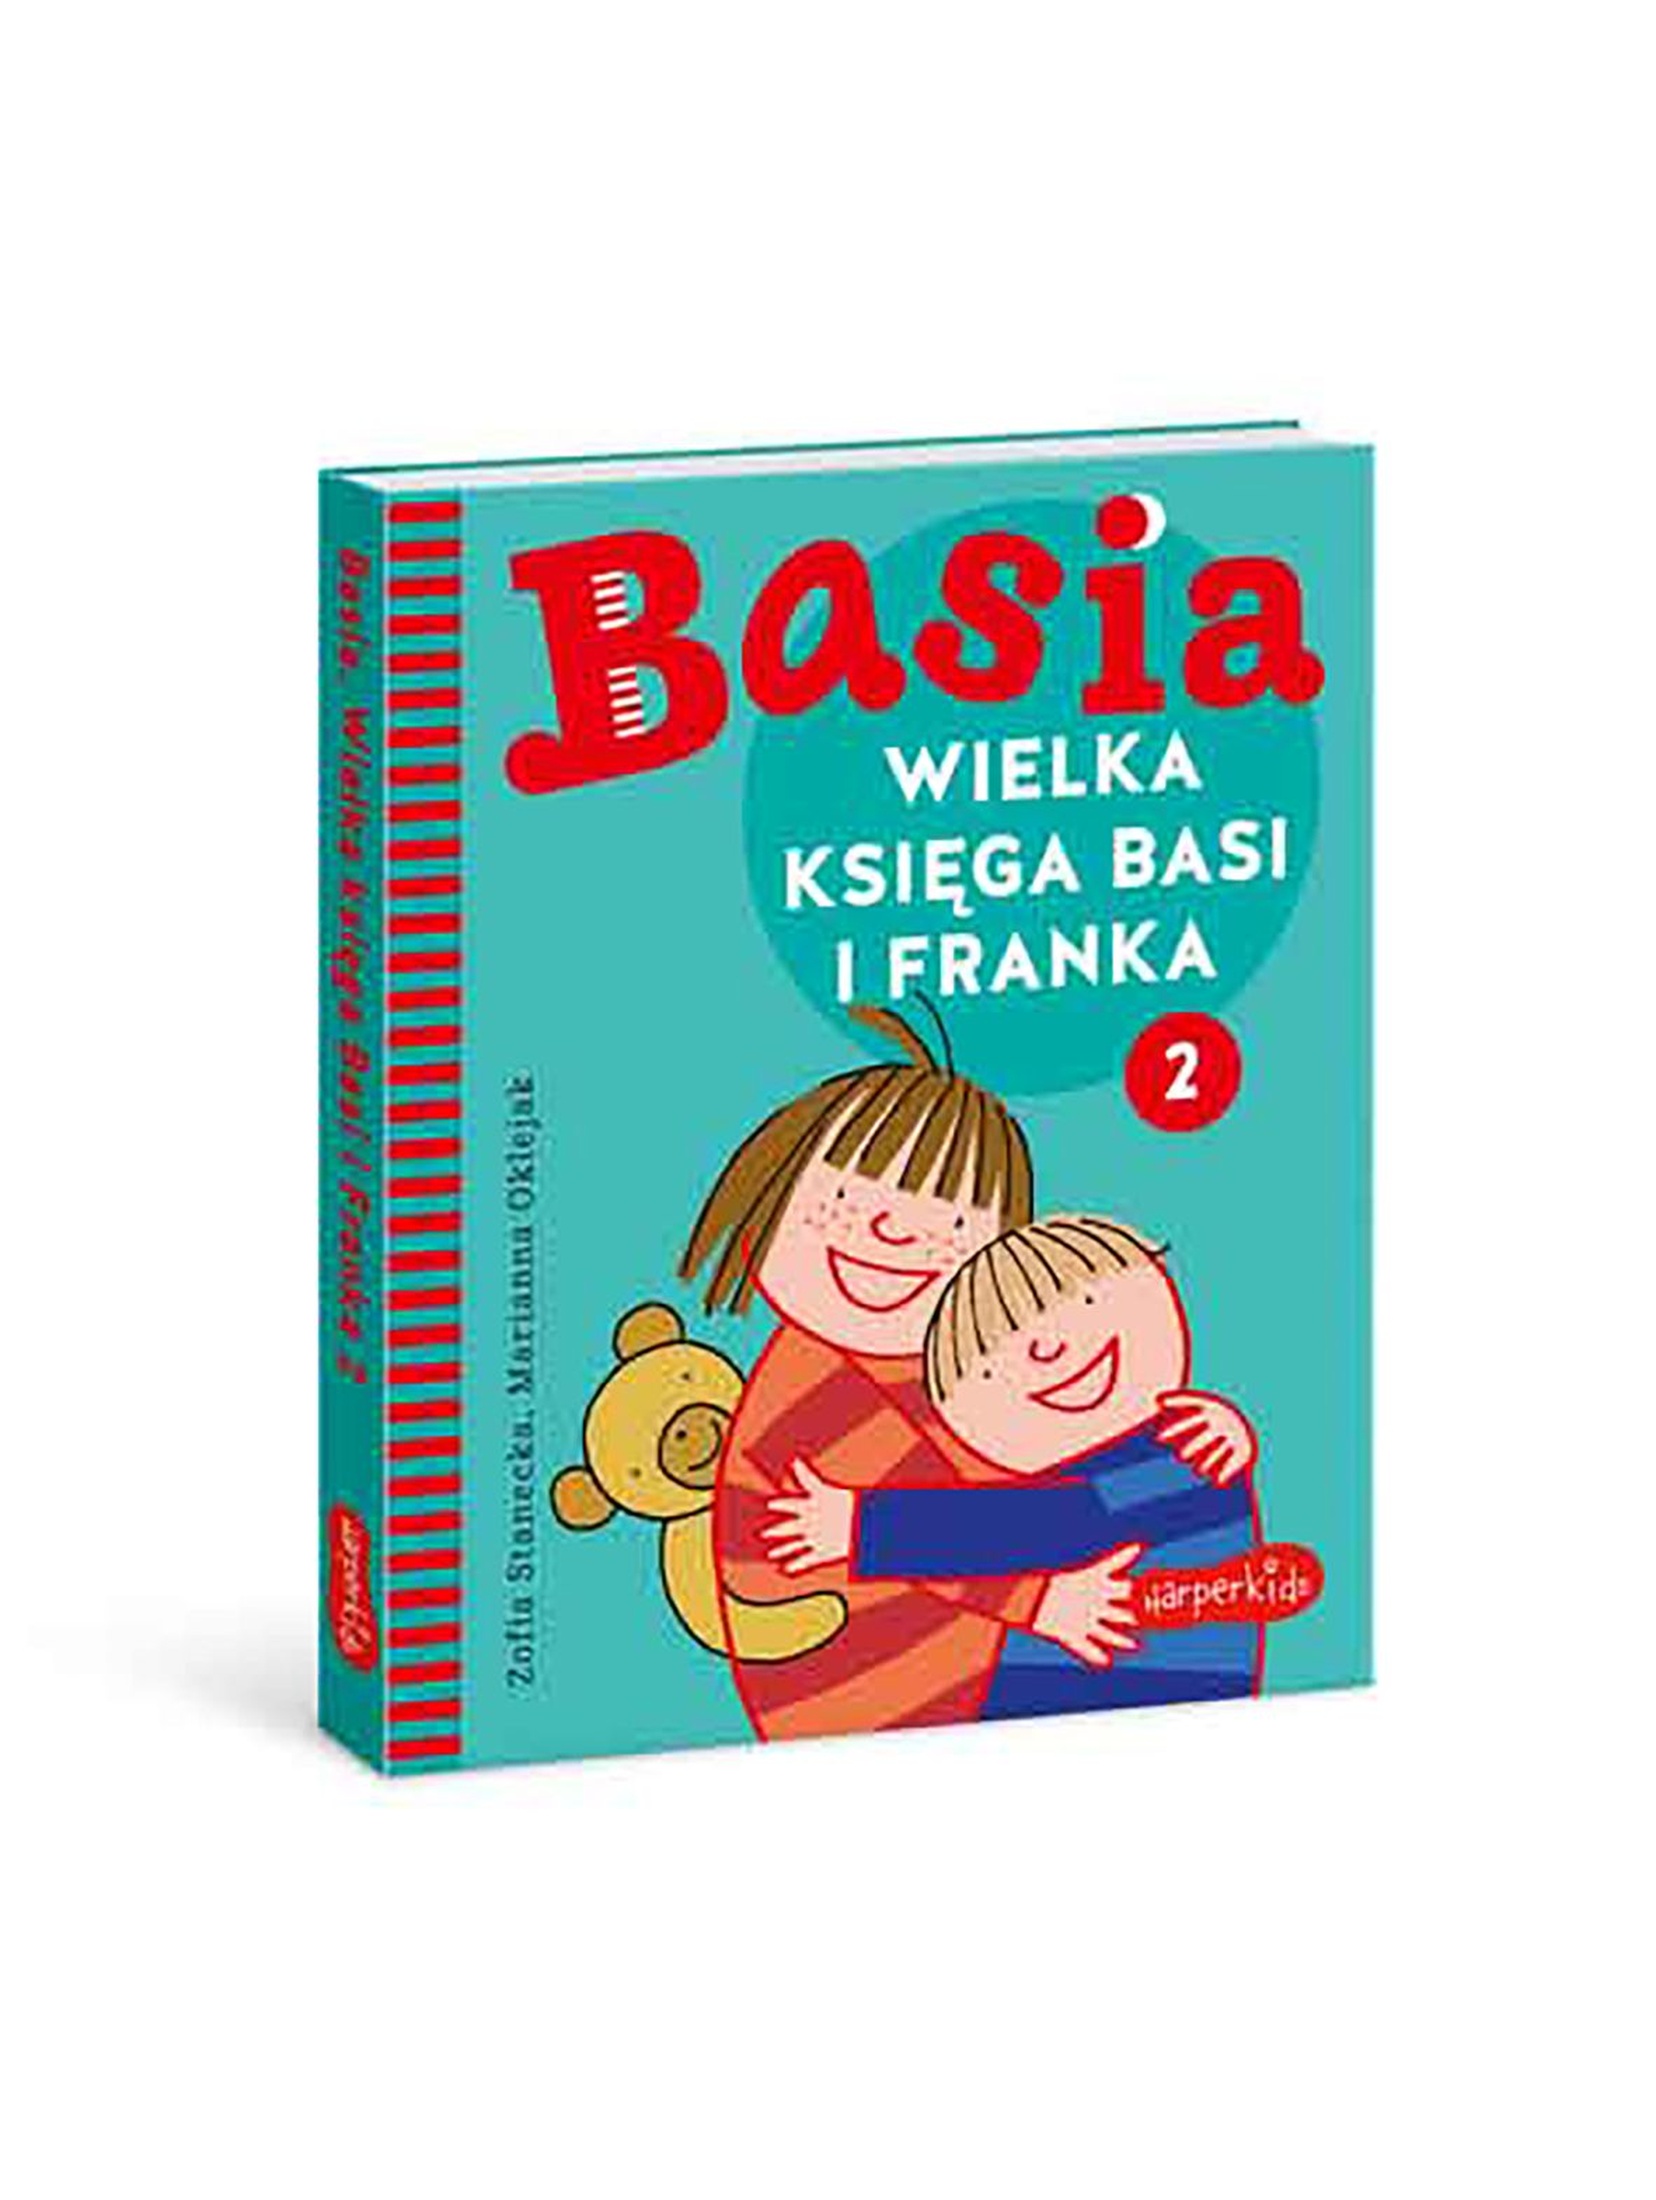 Wielka Księga Basi I Franka 2 - książka dla dzieci-